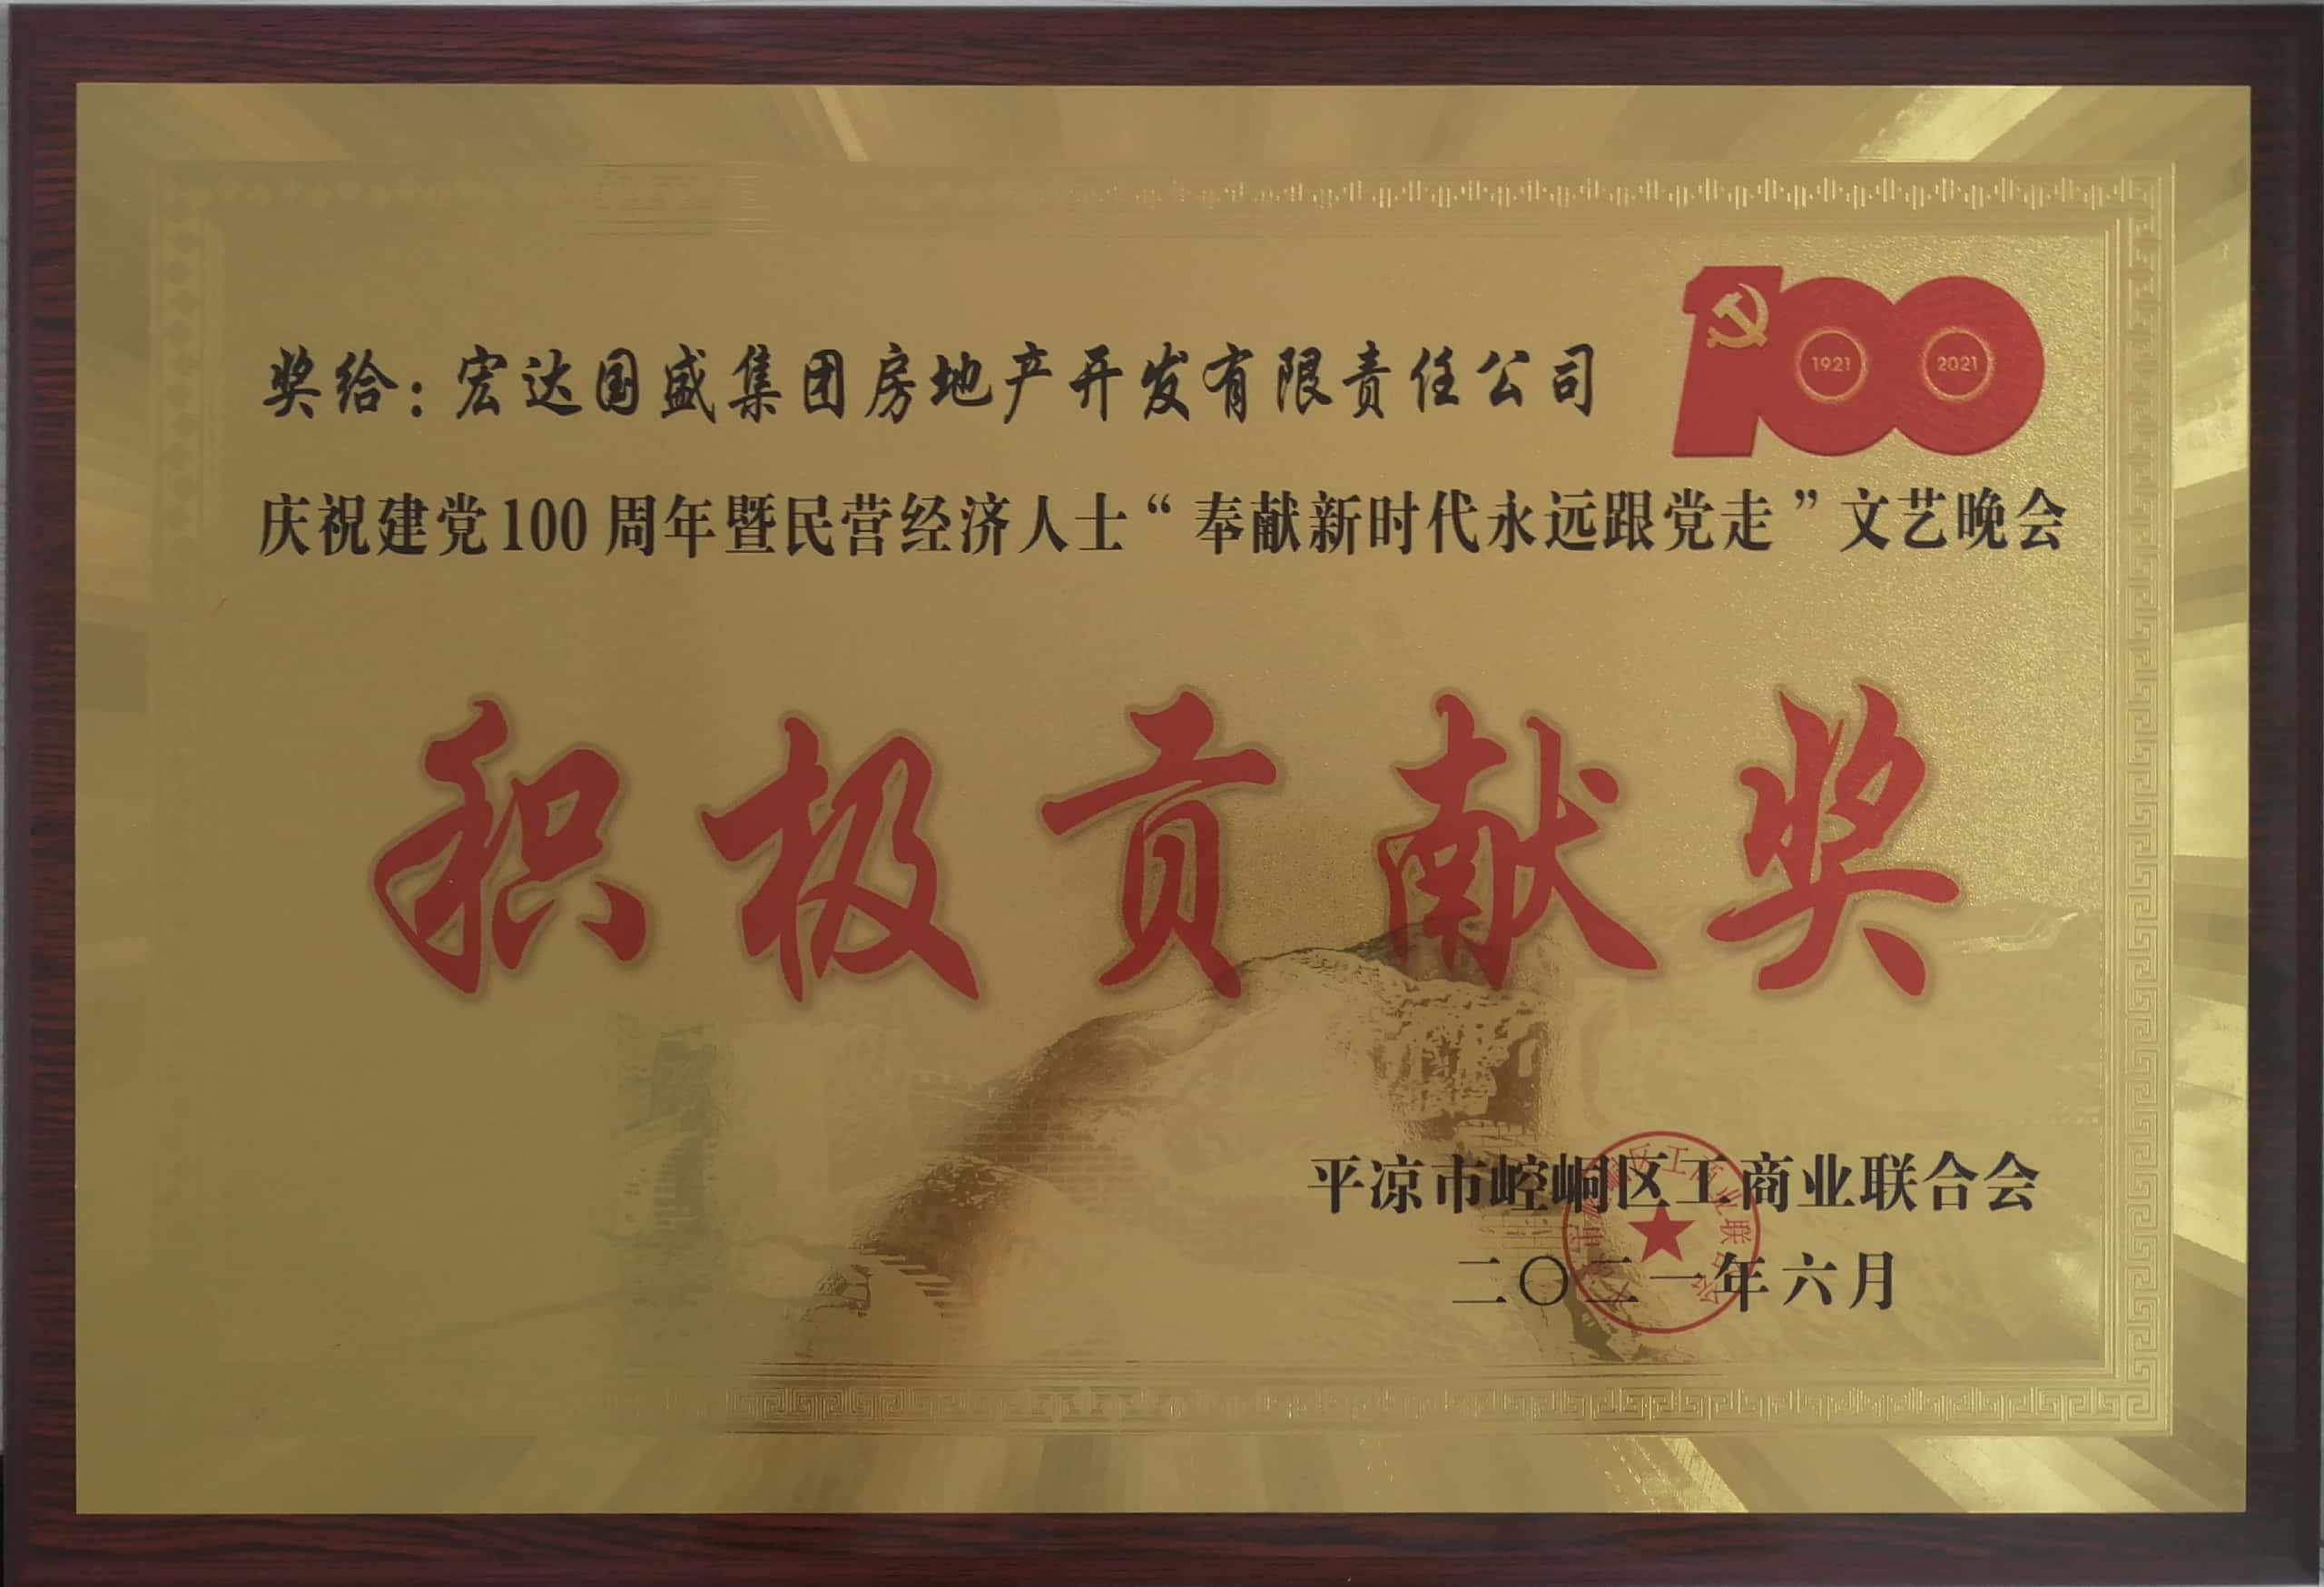 宏達國盛集團房地產開發公司榮獲慶祝建黨100周年積極貢獻獎